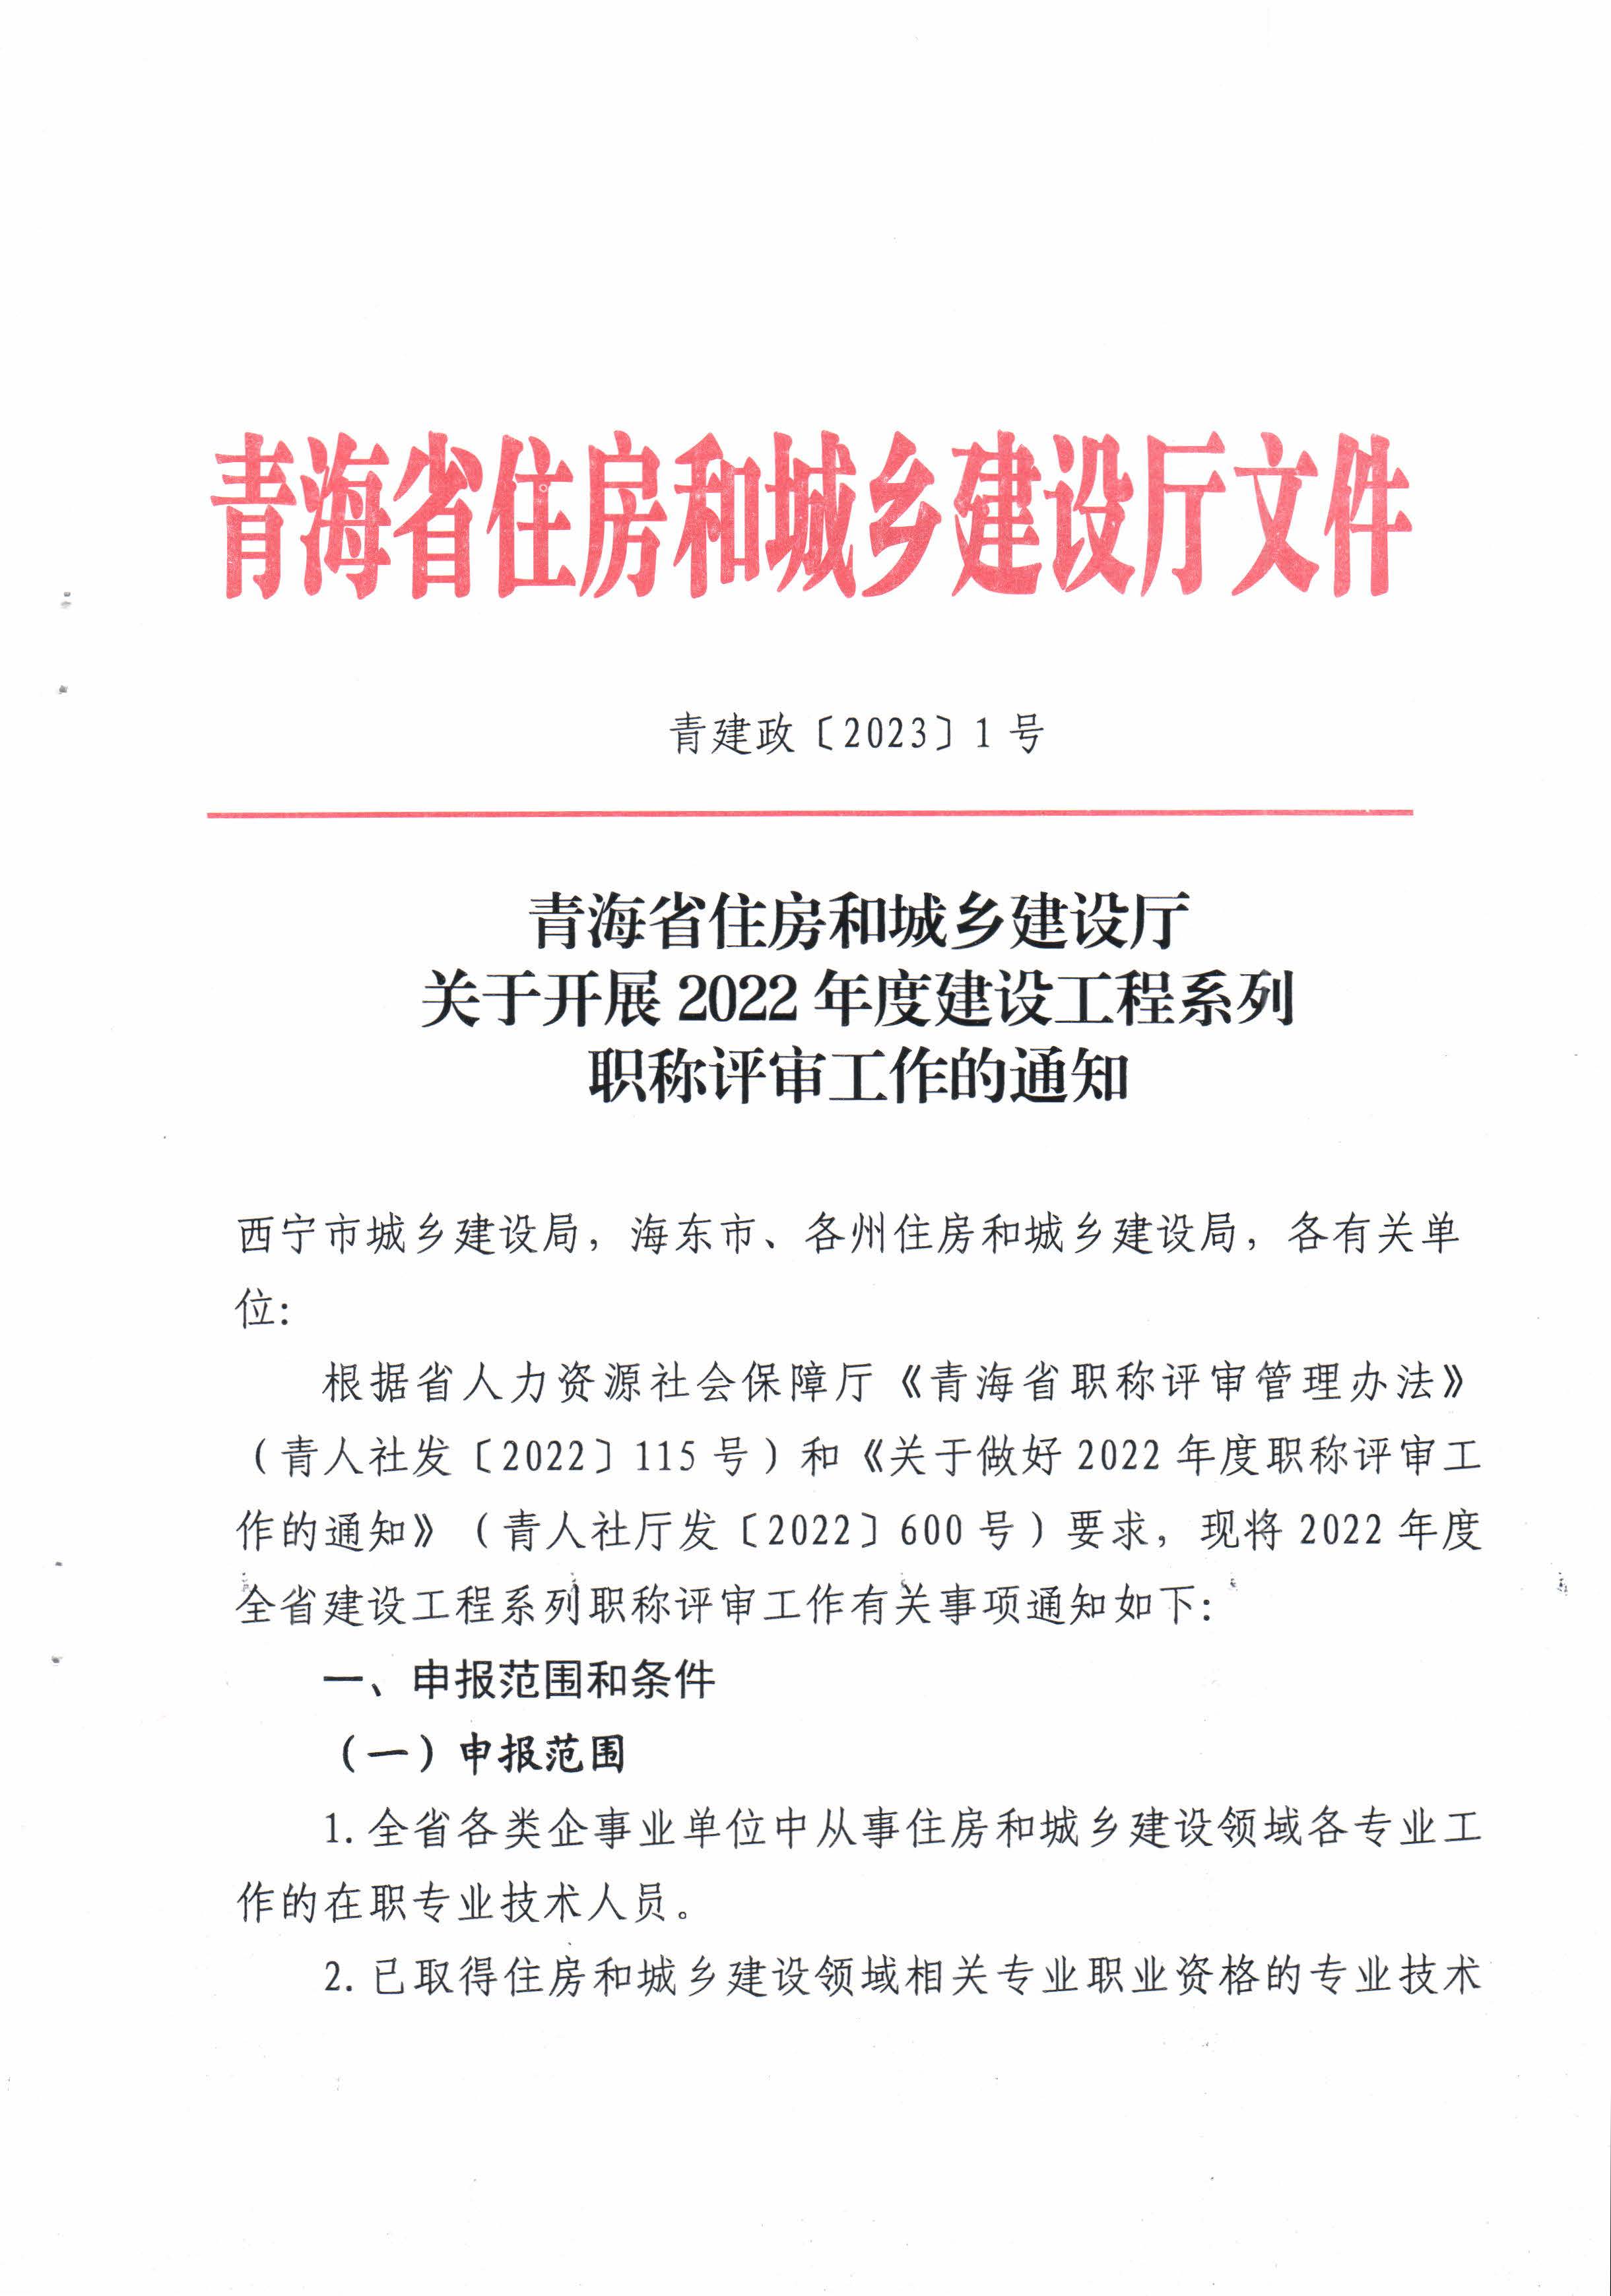 青海省住房和城乡建设厅关于开展2022年度建设工程系列职称评审工作的通知_页面_1.jpg